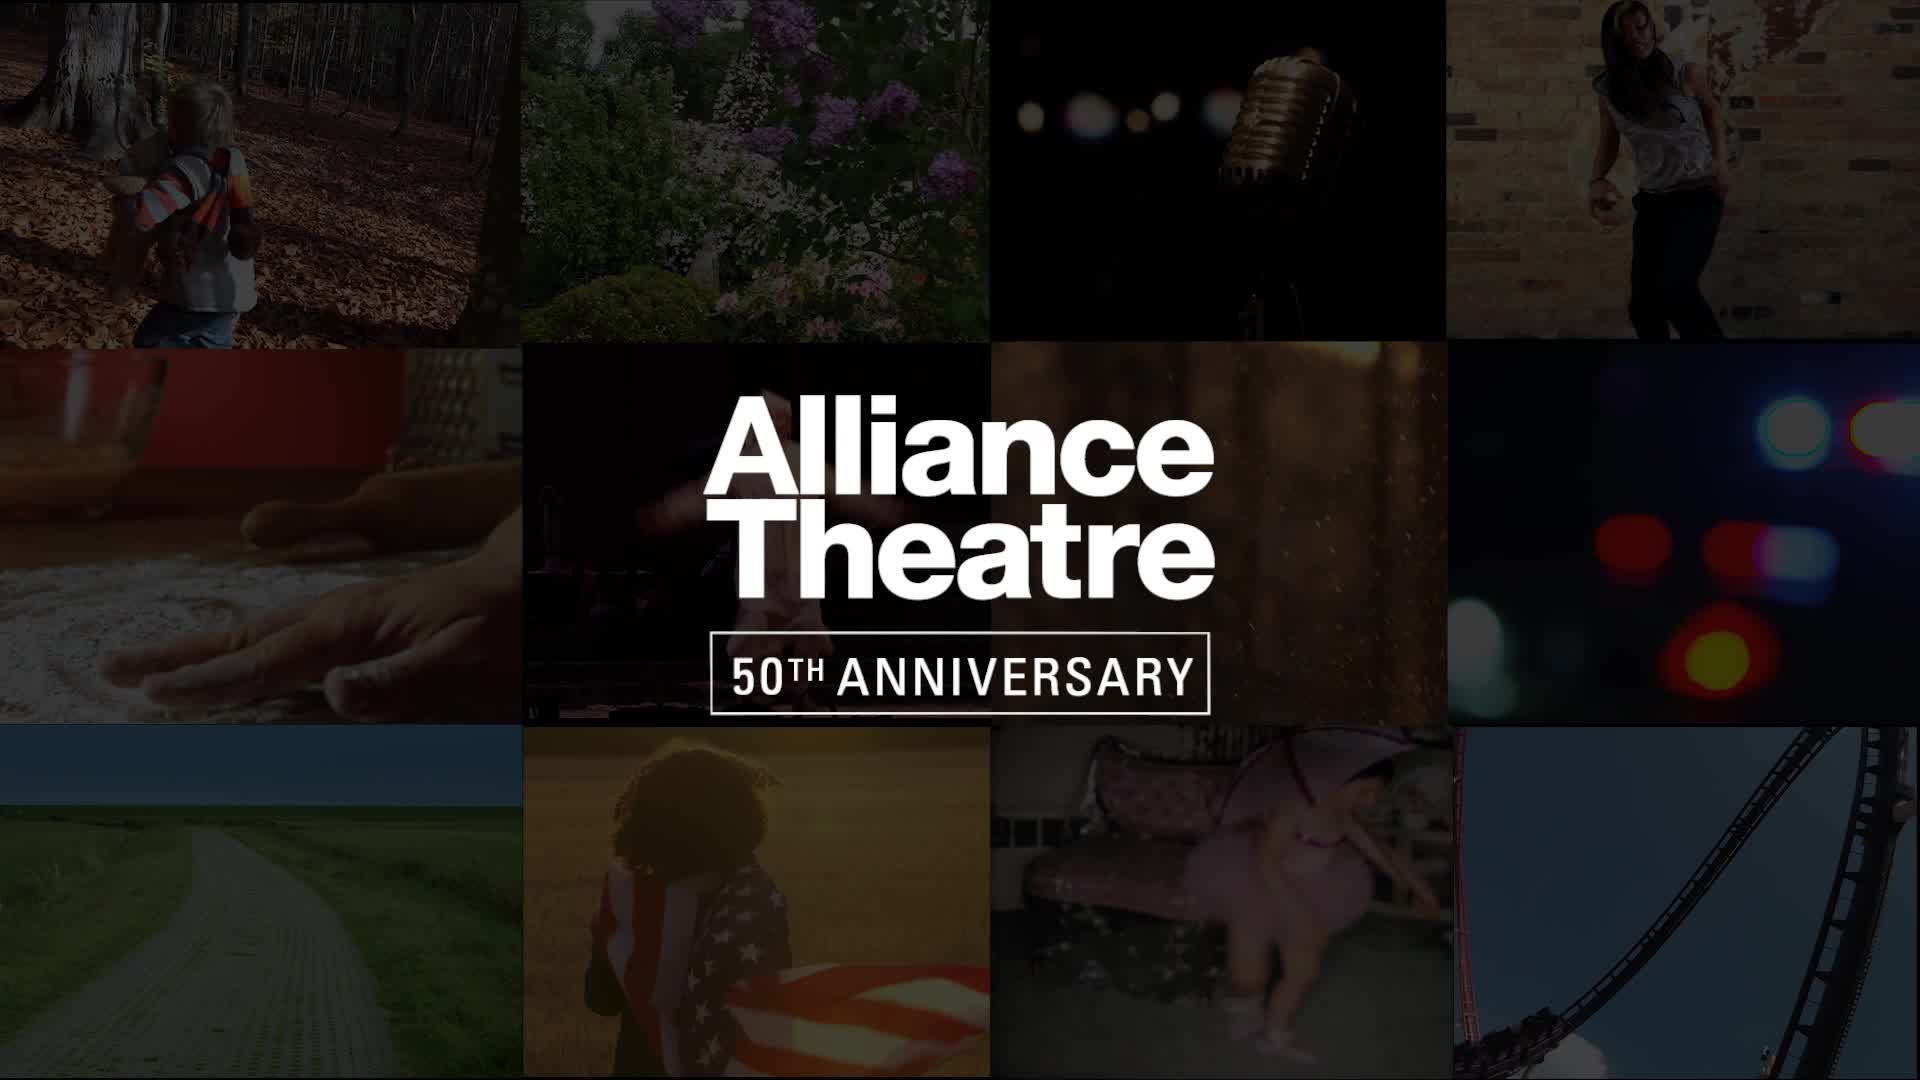 2018/19 Alliance Theatre 50th Anniversary Season Announcement